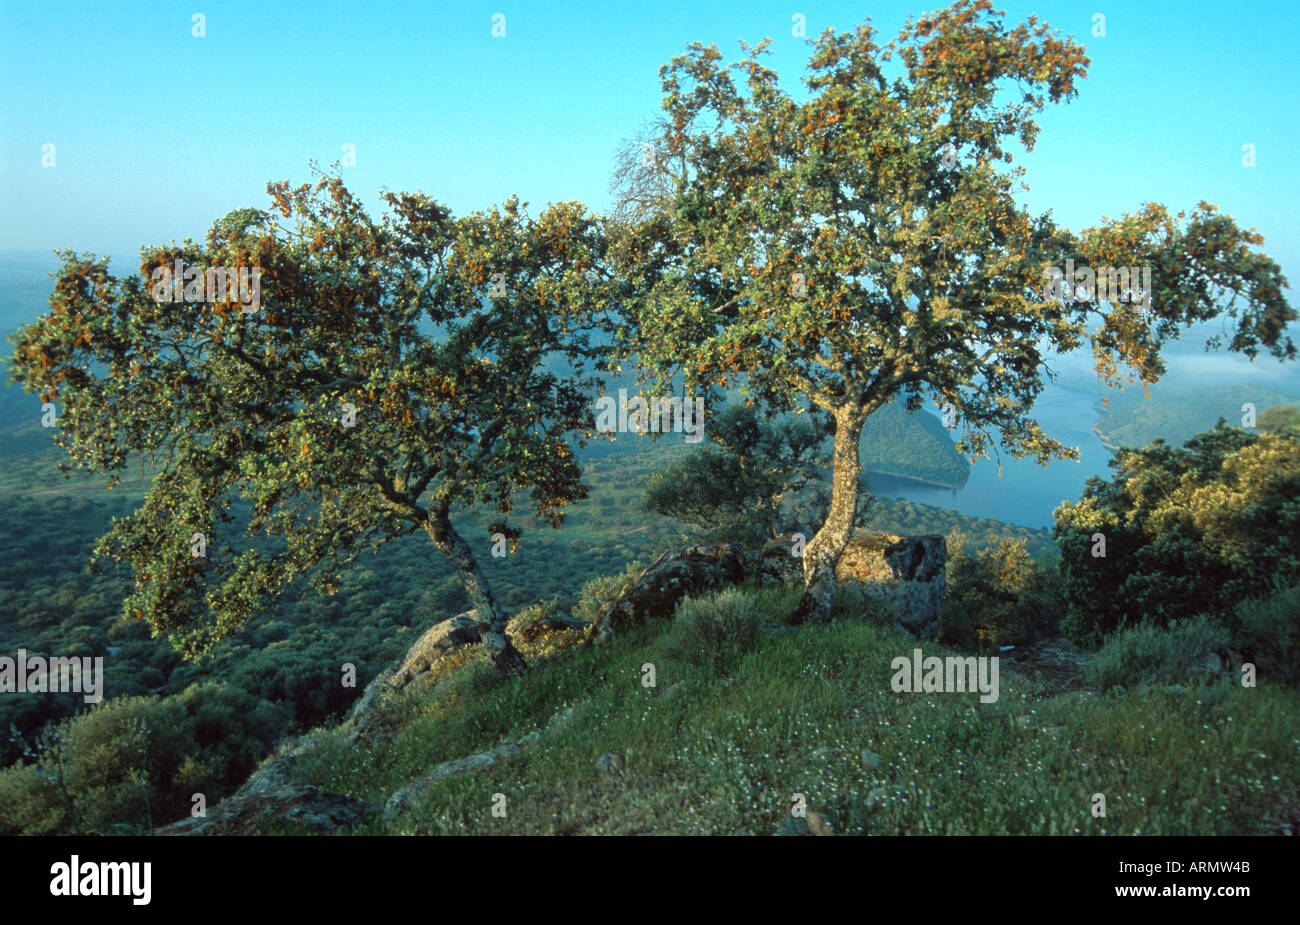 holm oak, evergreen oak (Quercus ilex), Spain, Extremadura Stock Photo